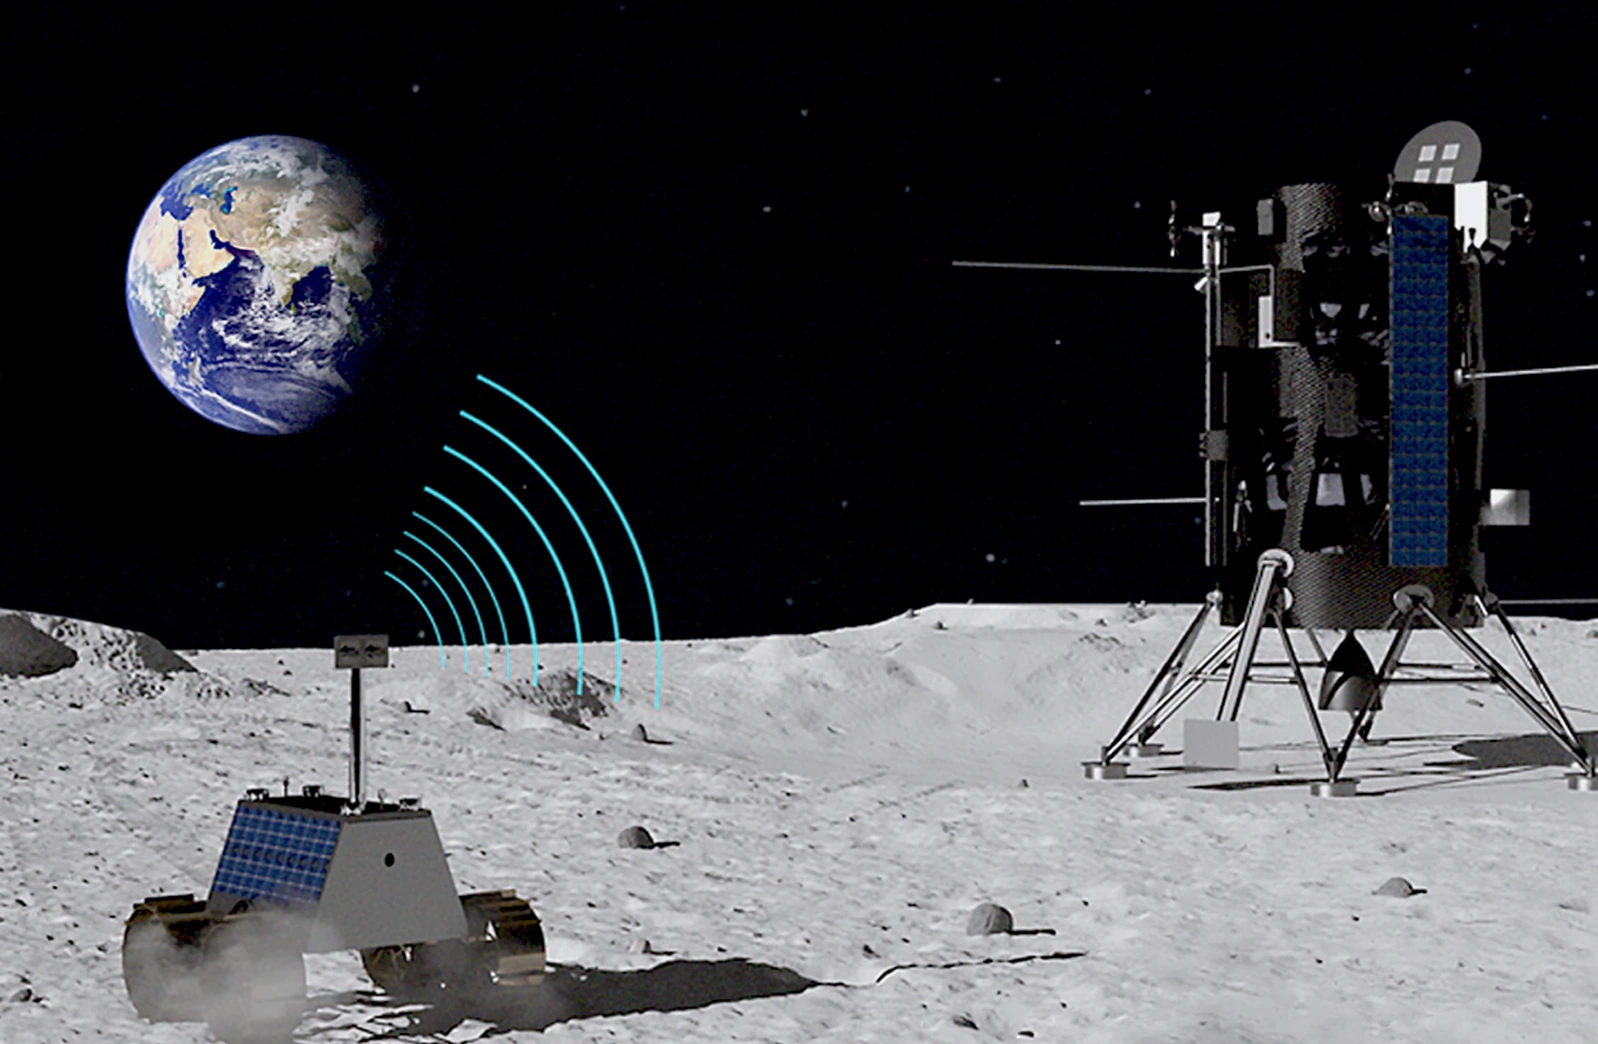 Mạng sẽ được cung cấp bởi một trạm cơ sở được trang bị ăng-ten được lưu trữ trong tàu đổ bộ mặt trăng Nova-C do công ty vũ trụ Intuitive Machines của Hoa Kỳ thiết kế, cũng như bởi một xe tự hành chạy bằng năng lượng mặt trời đi kèm. Ảnh: @AFP.